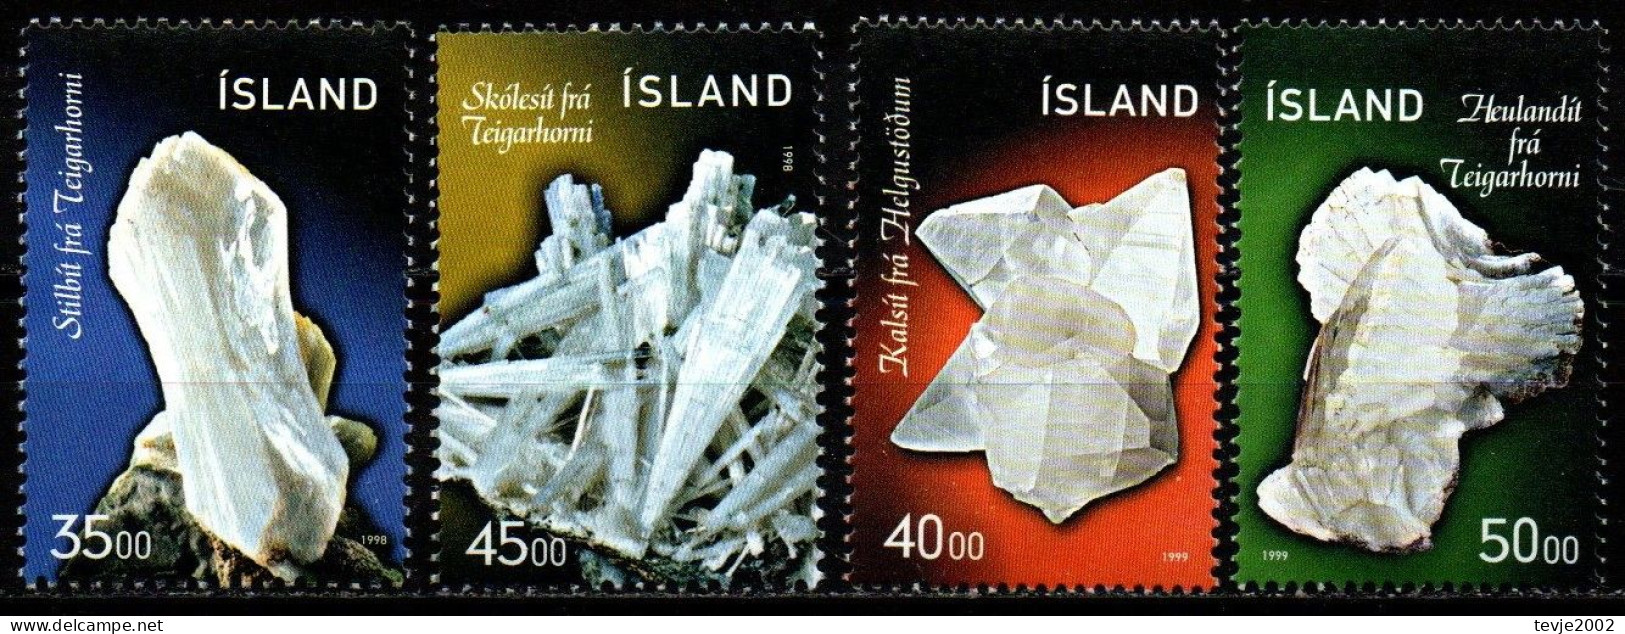 Island 1998/99 - Mi.Nr. 893/894 + 917/918 - Postfrisch MNH - Mineralien Minerals - Minéraux